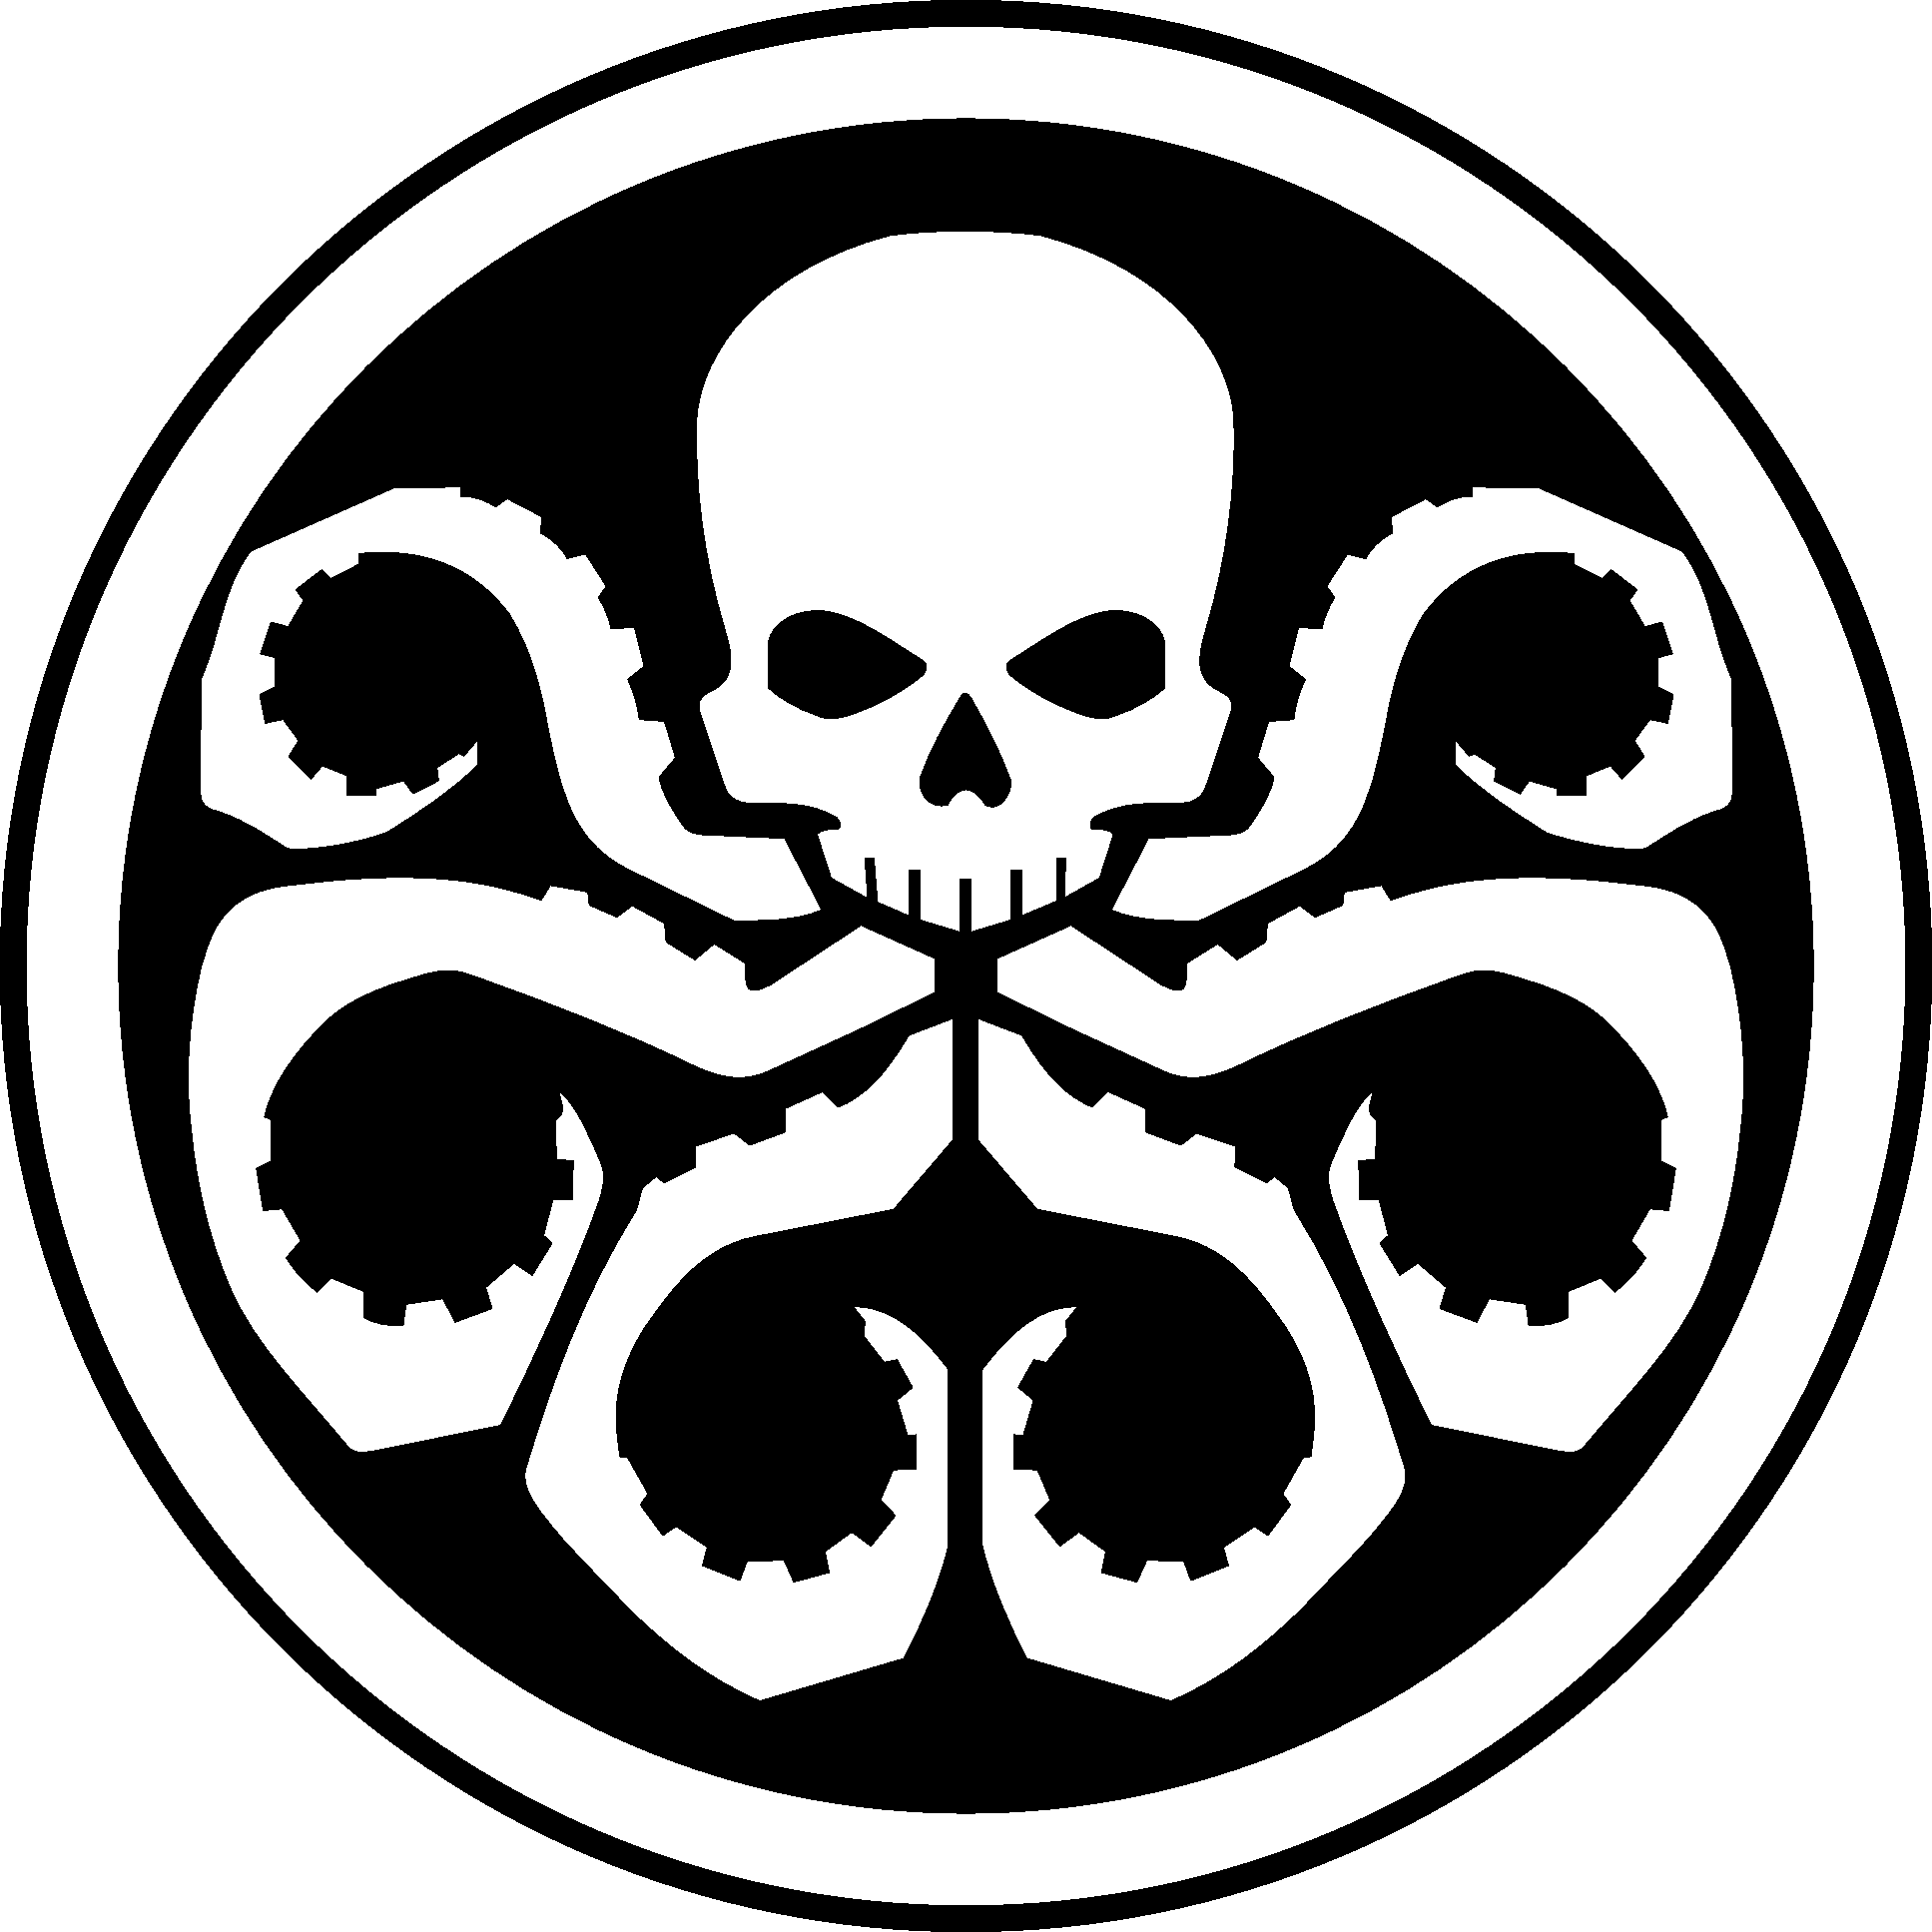 Hydra logo escudo imagen Transparente